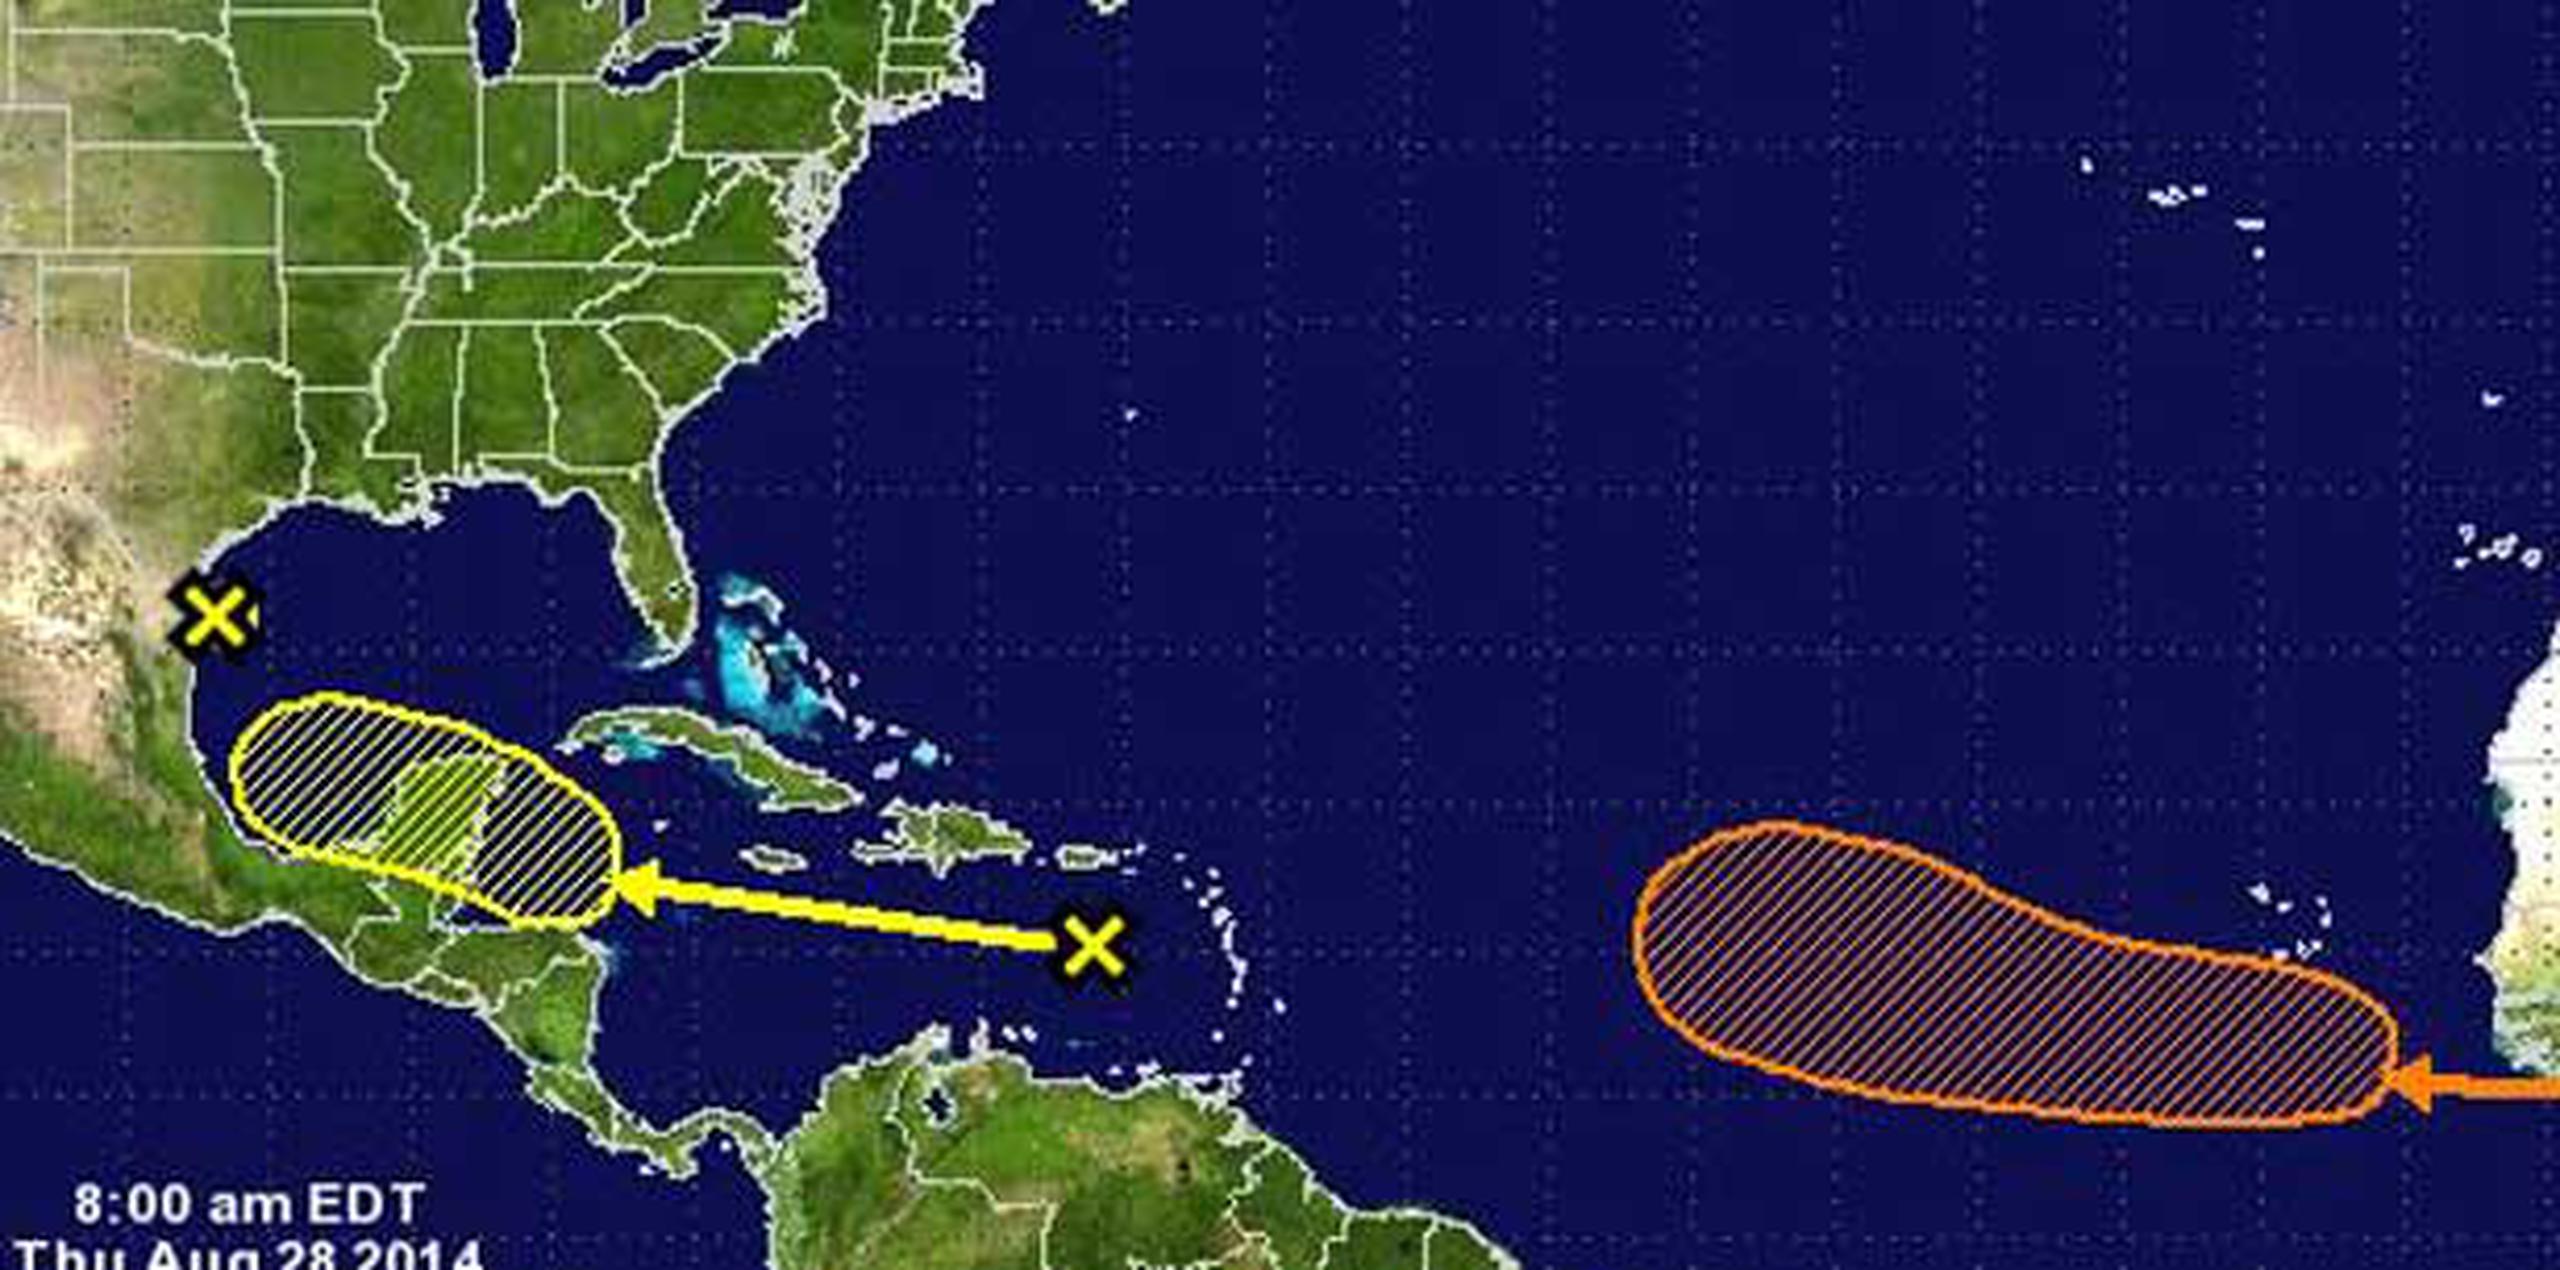 Otra onda que se encuentra en camino al Caribe tiene 40 por ciento de posibilidad de desarrollo ciclónico, indicó el NHC. Negrón comentó que se espera que afecte a la Isla durante el sábado y domingo. (NOAA)
